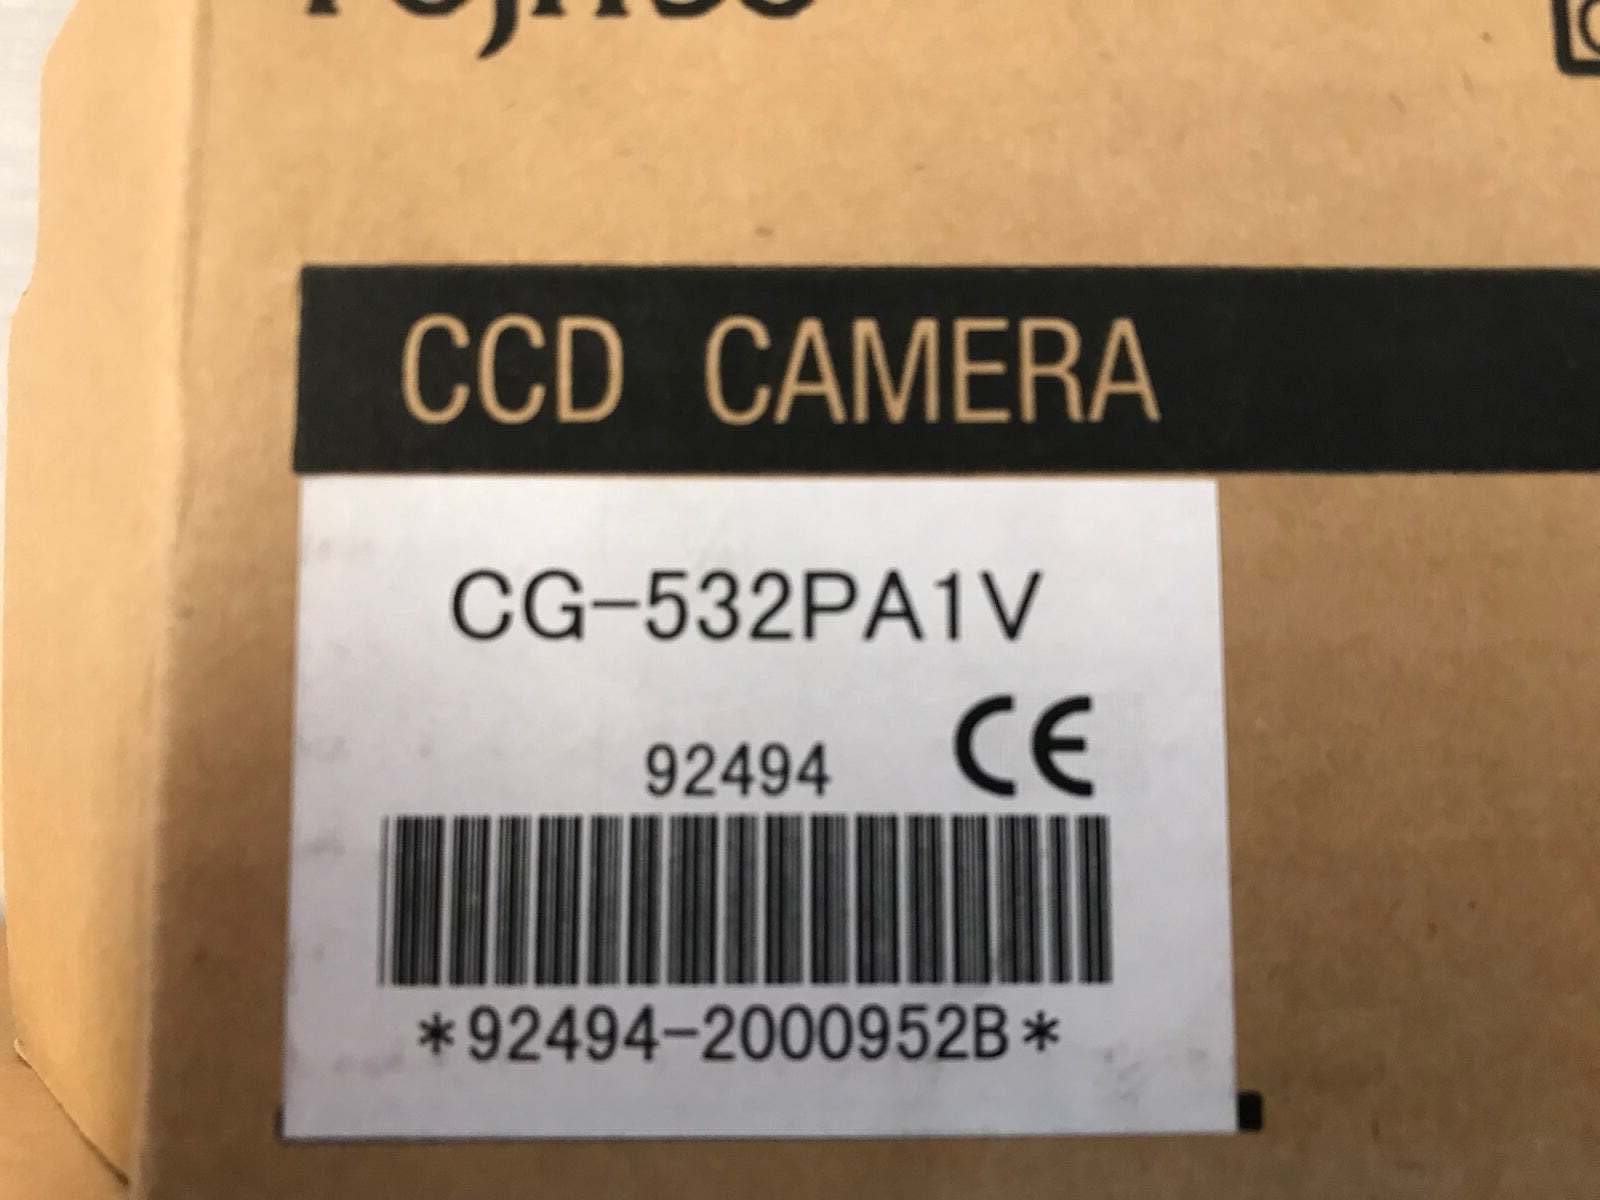 Overvågningskamera, Fujitsu ccd camera